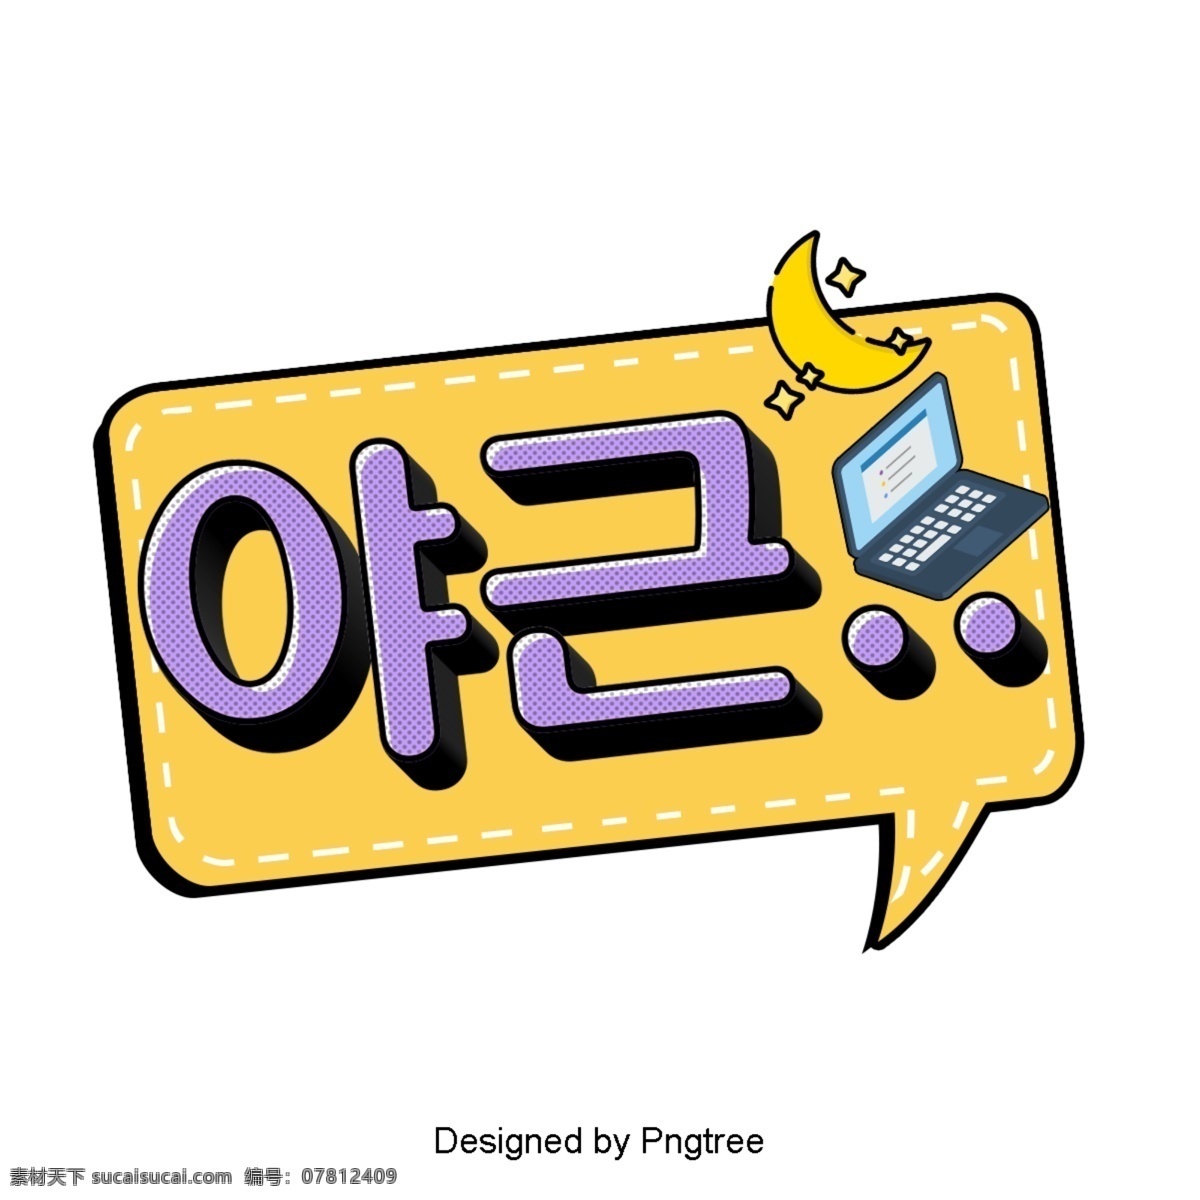 晚上 卡通 简单 字体 耳语 晚 动画片 韩国 现场 对话泡泡 语风 装饰 任务 现代 时尚 可爱 职业 紫色 黄色